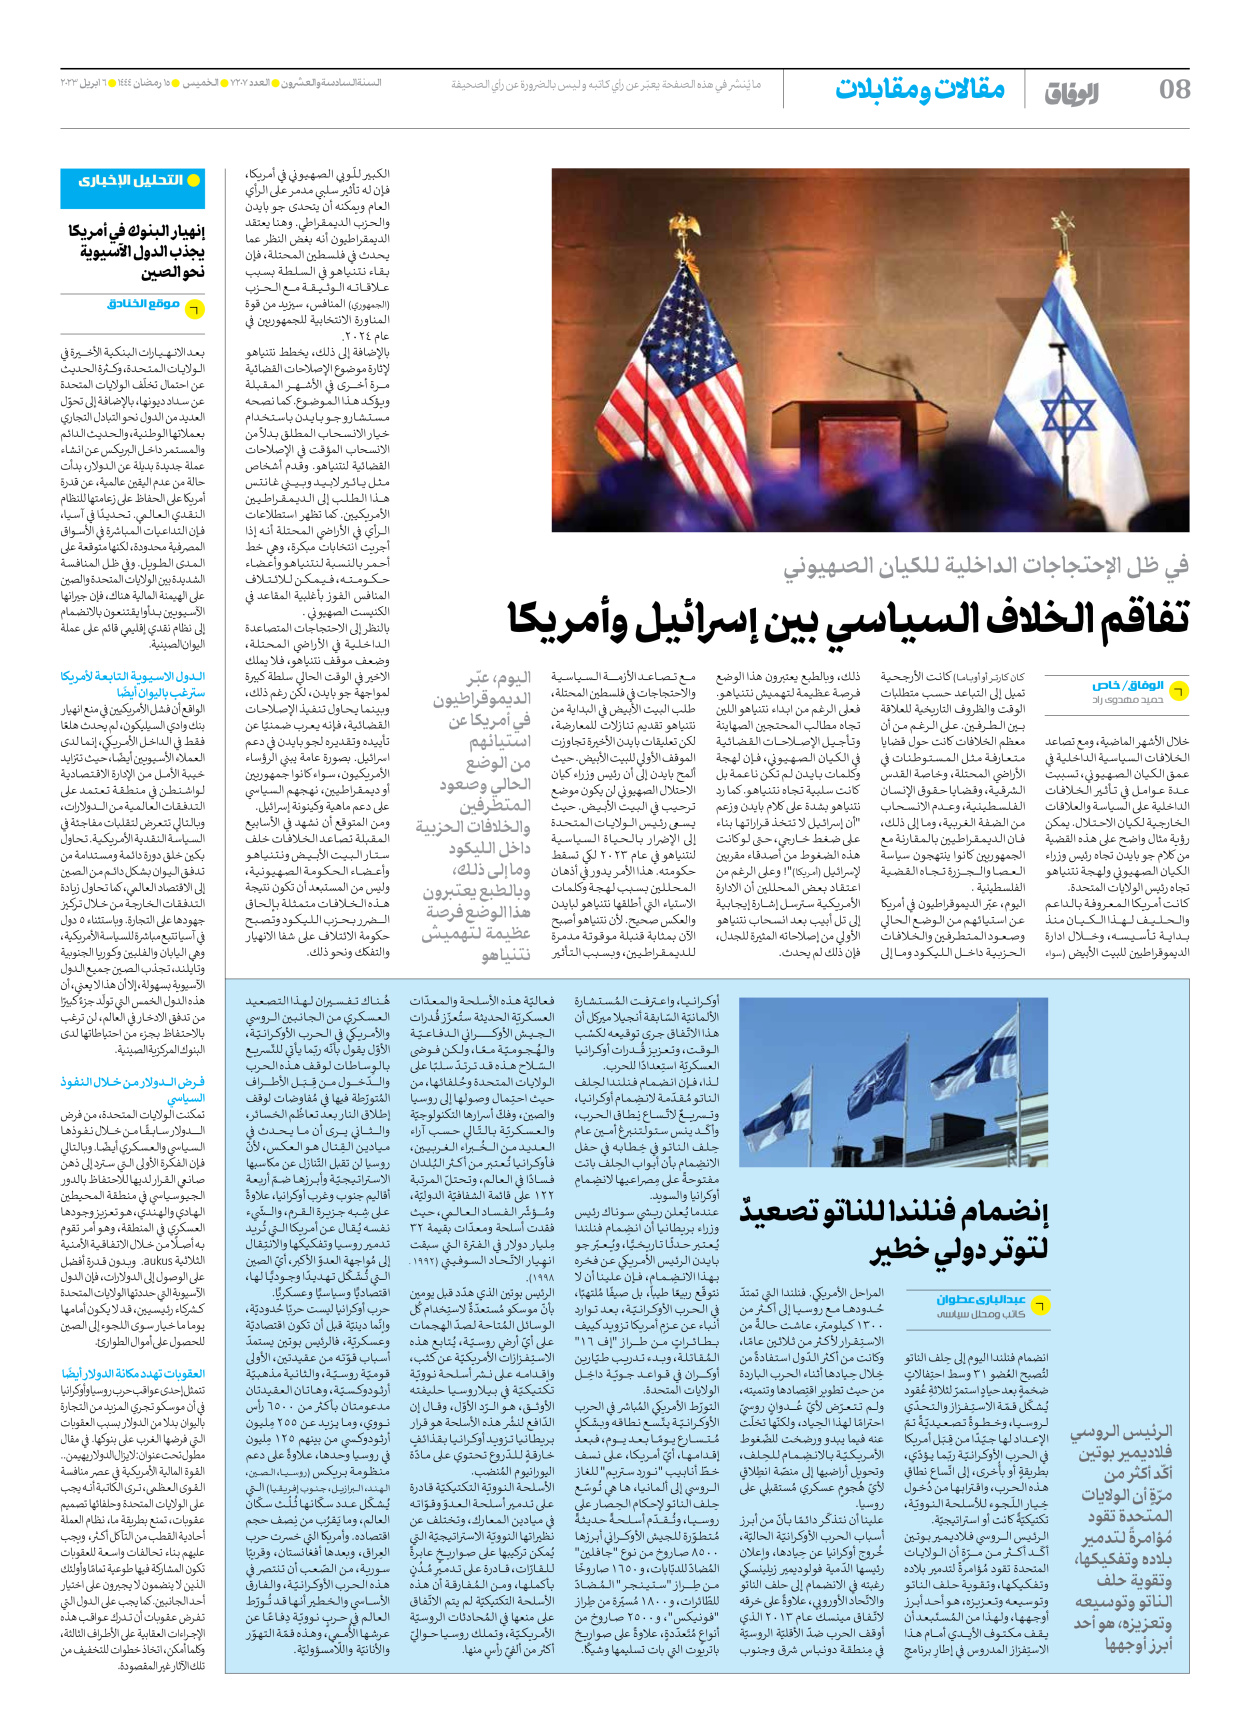 صحیفة ایران الدولیة الوفاق - العدد سبعة آلاف ومائتان وسبعة - ٠٦ أبريل ٢٠٢٣ - الصفحة ۸